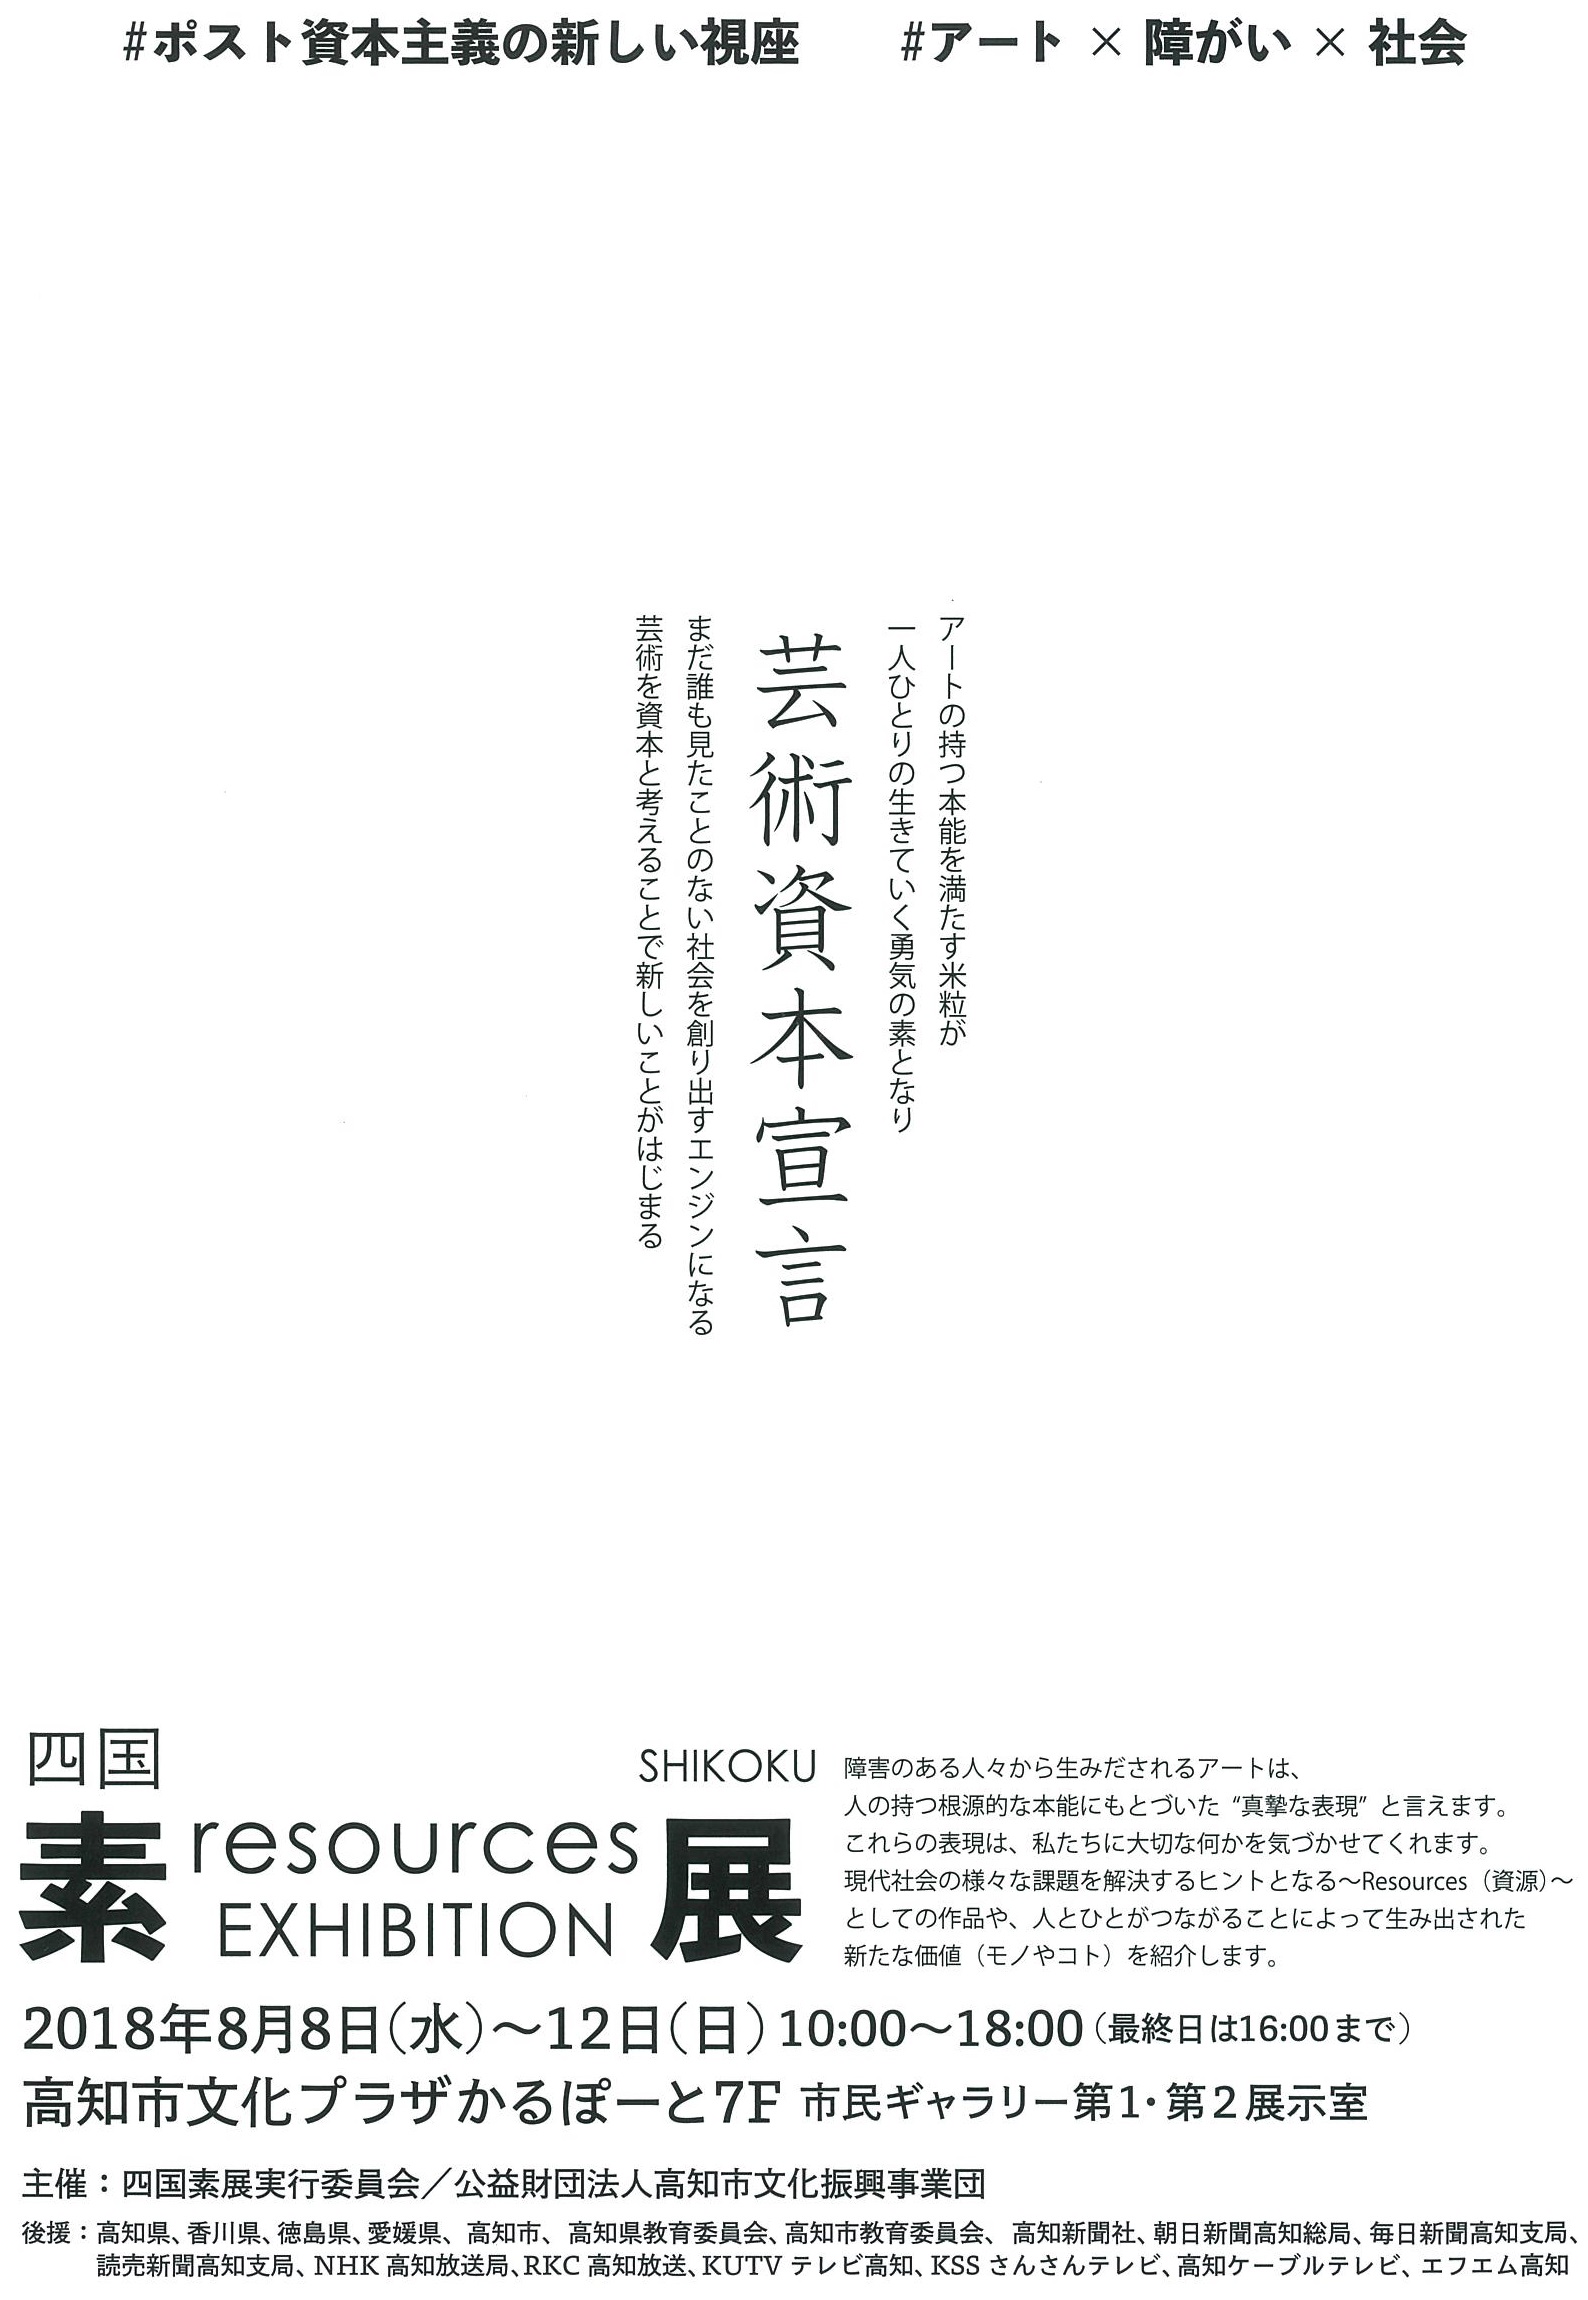 					四国素展 SHIKOKU resources EXHIBITION	